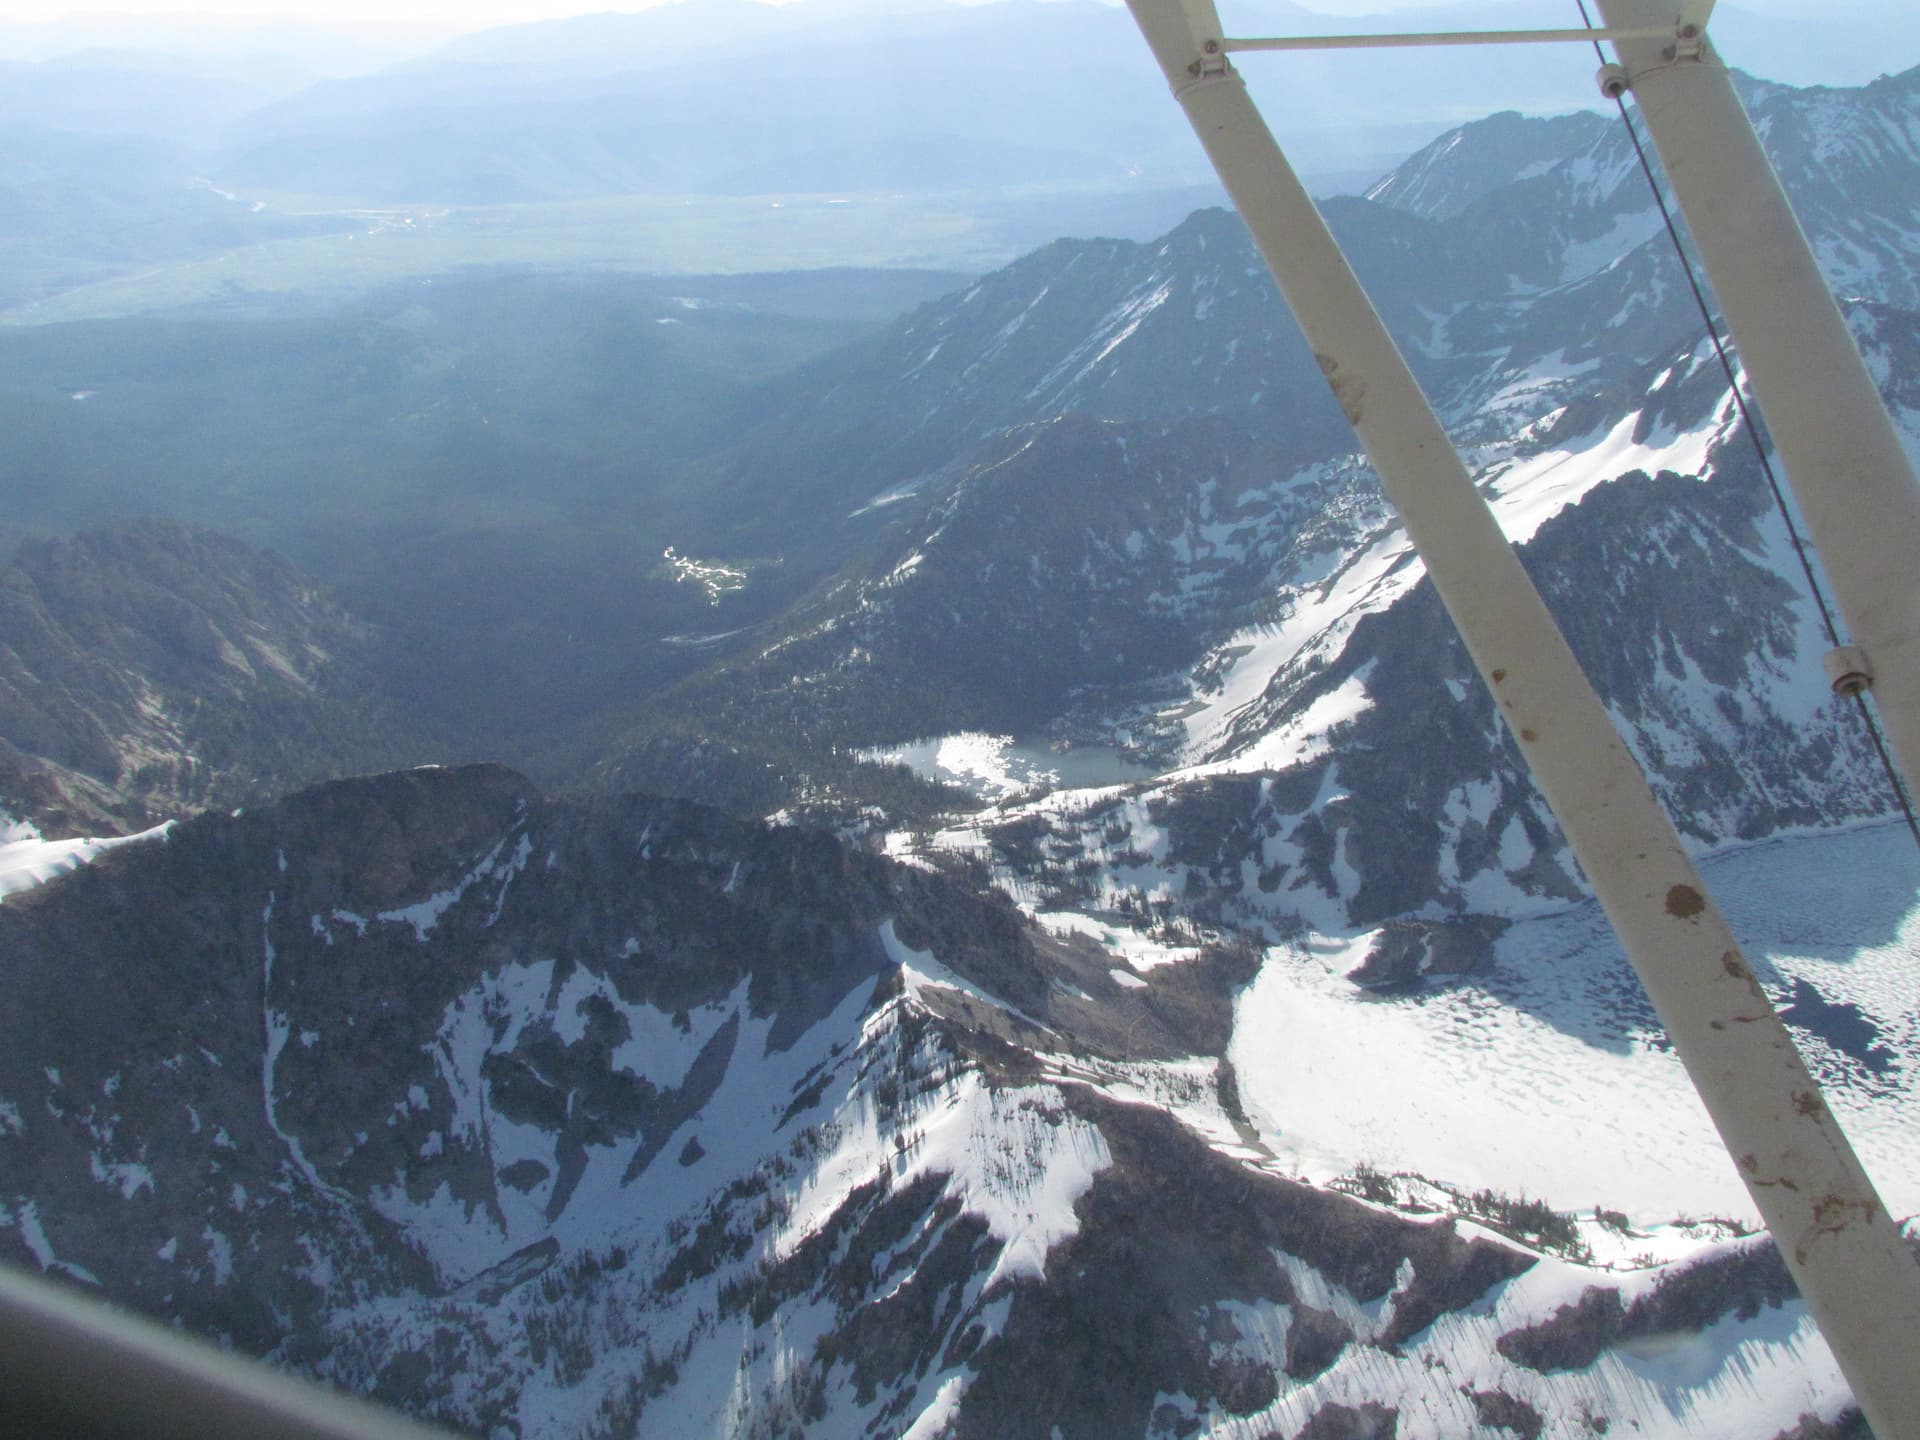 Alpine Lake (8337’) below Sawtooth Lake (8435’) | Stanley chamber